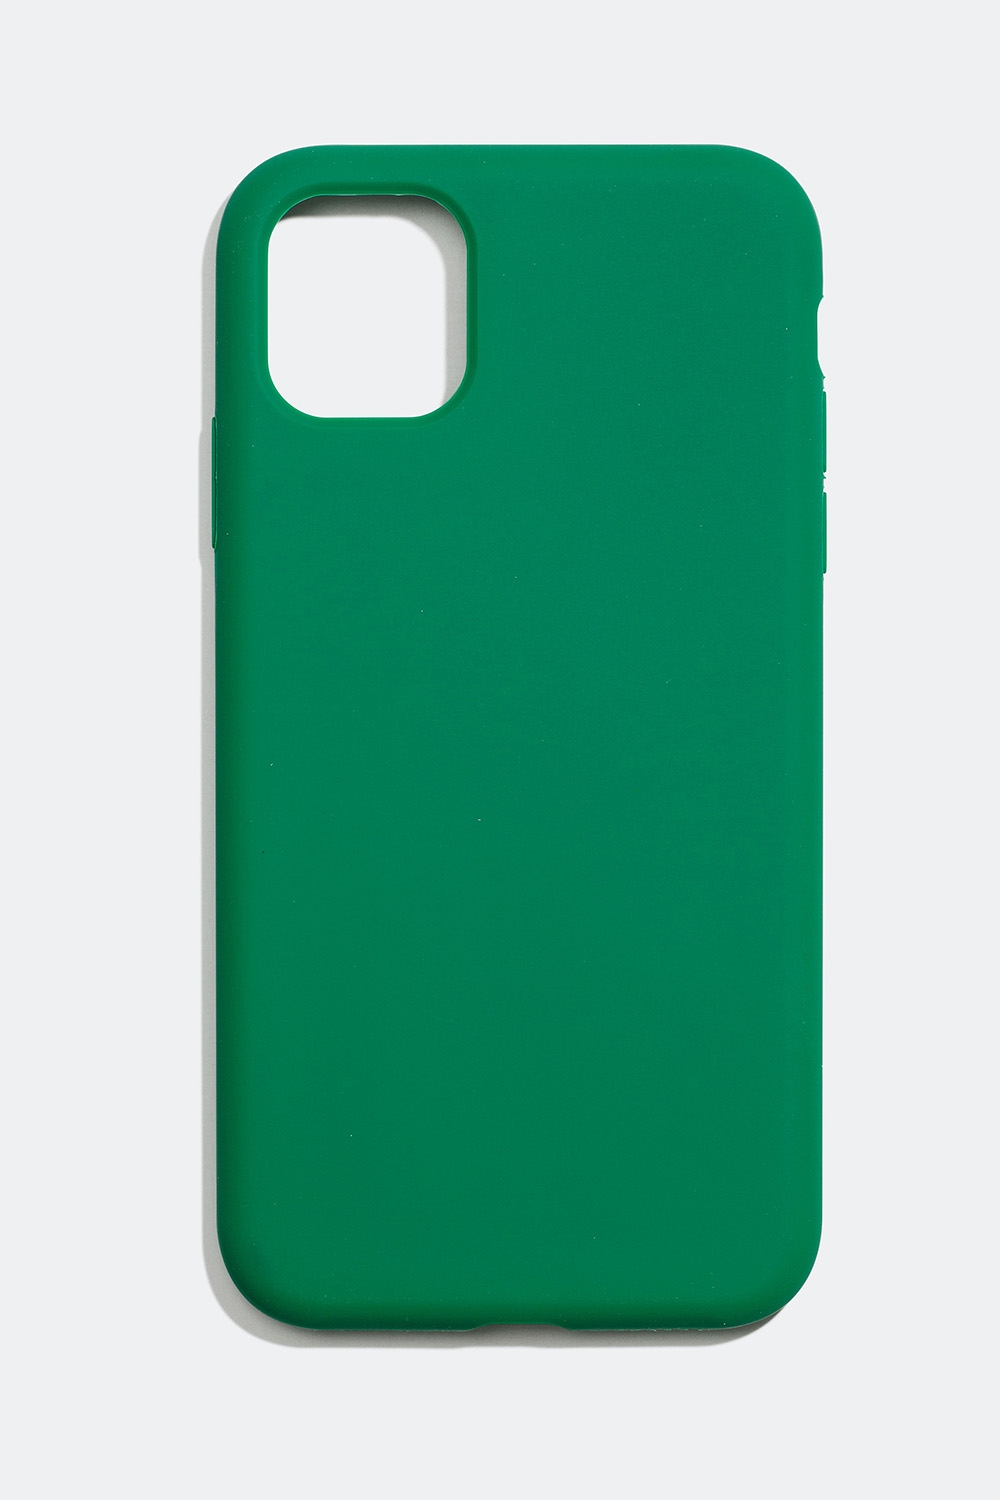 Matt mobildeksel i grønt, iPhone 11/XR i gruppen Tilbehør / Mobiltilbehør / Mobildeksel / iPhone 11 / XR hos Glitter (174000357711)